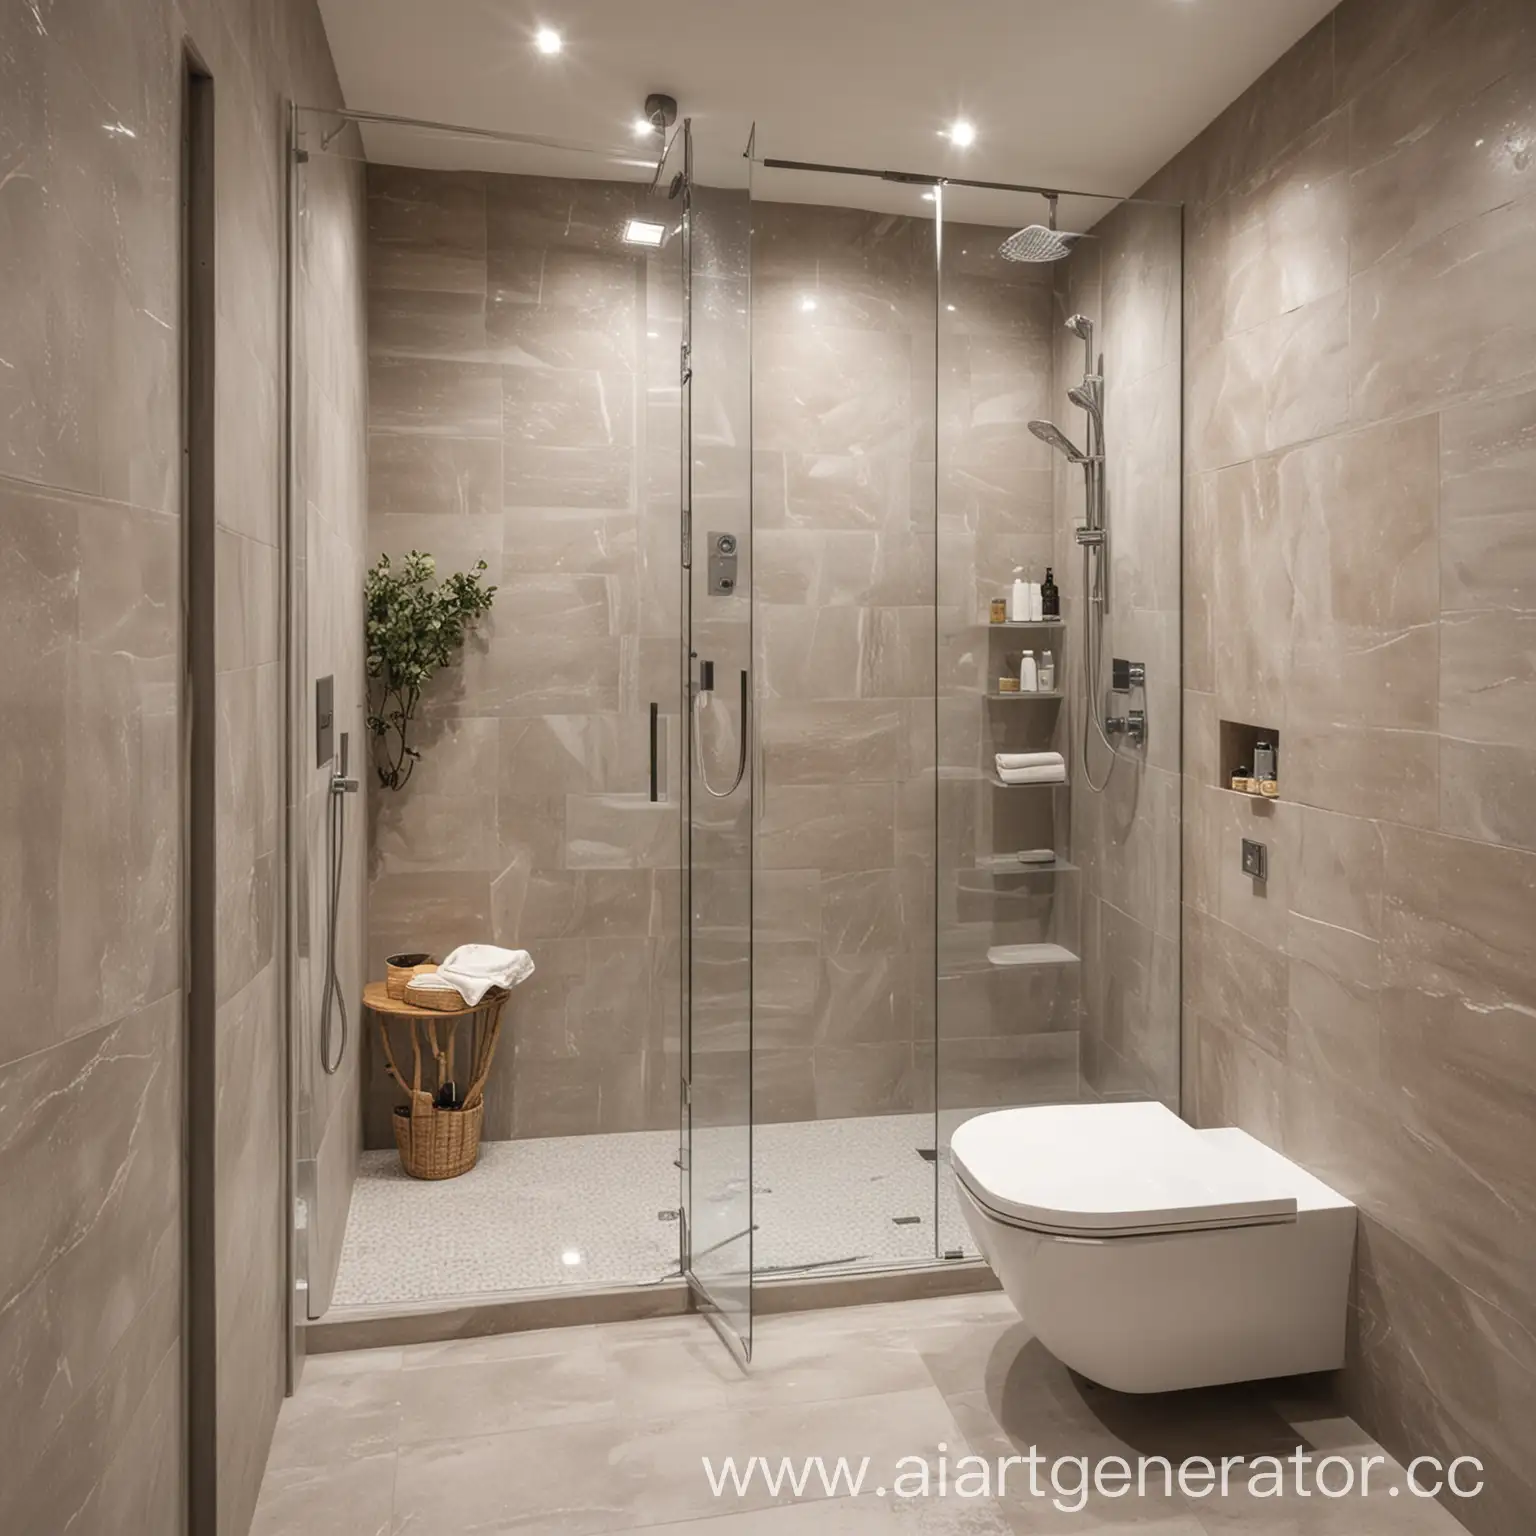 Ванная комната без окна с серыми, белыми и бежевыми светами с стеклянной перегородкой в душевой кабине 